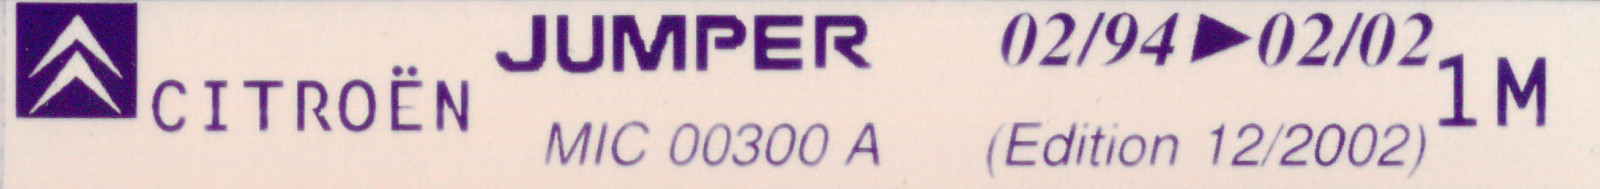 MIC00300A Catalogue pièces rechange Citroën Jumper 02/94►02/02 12/2002